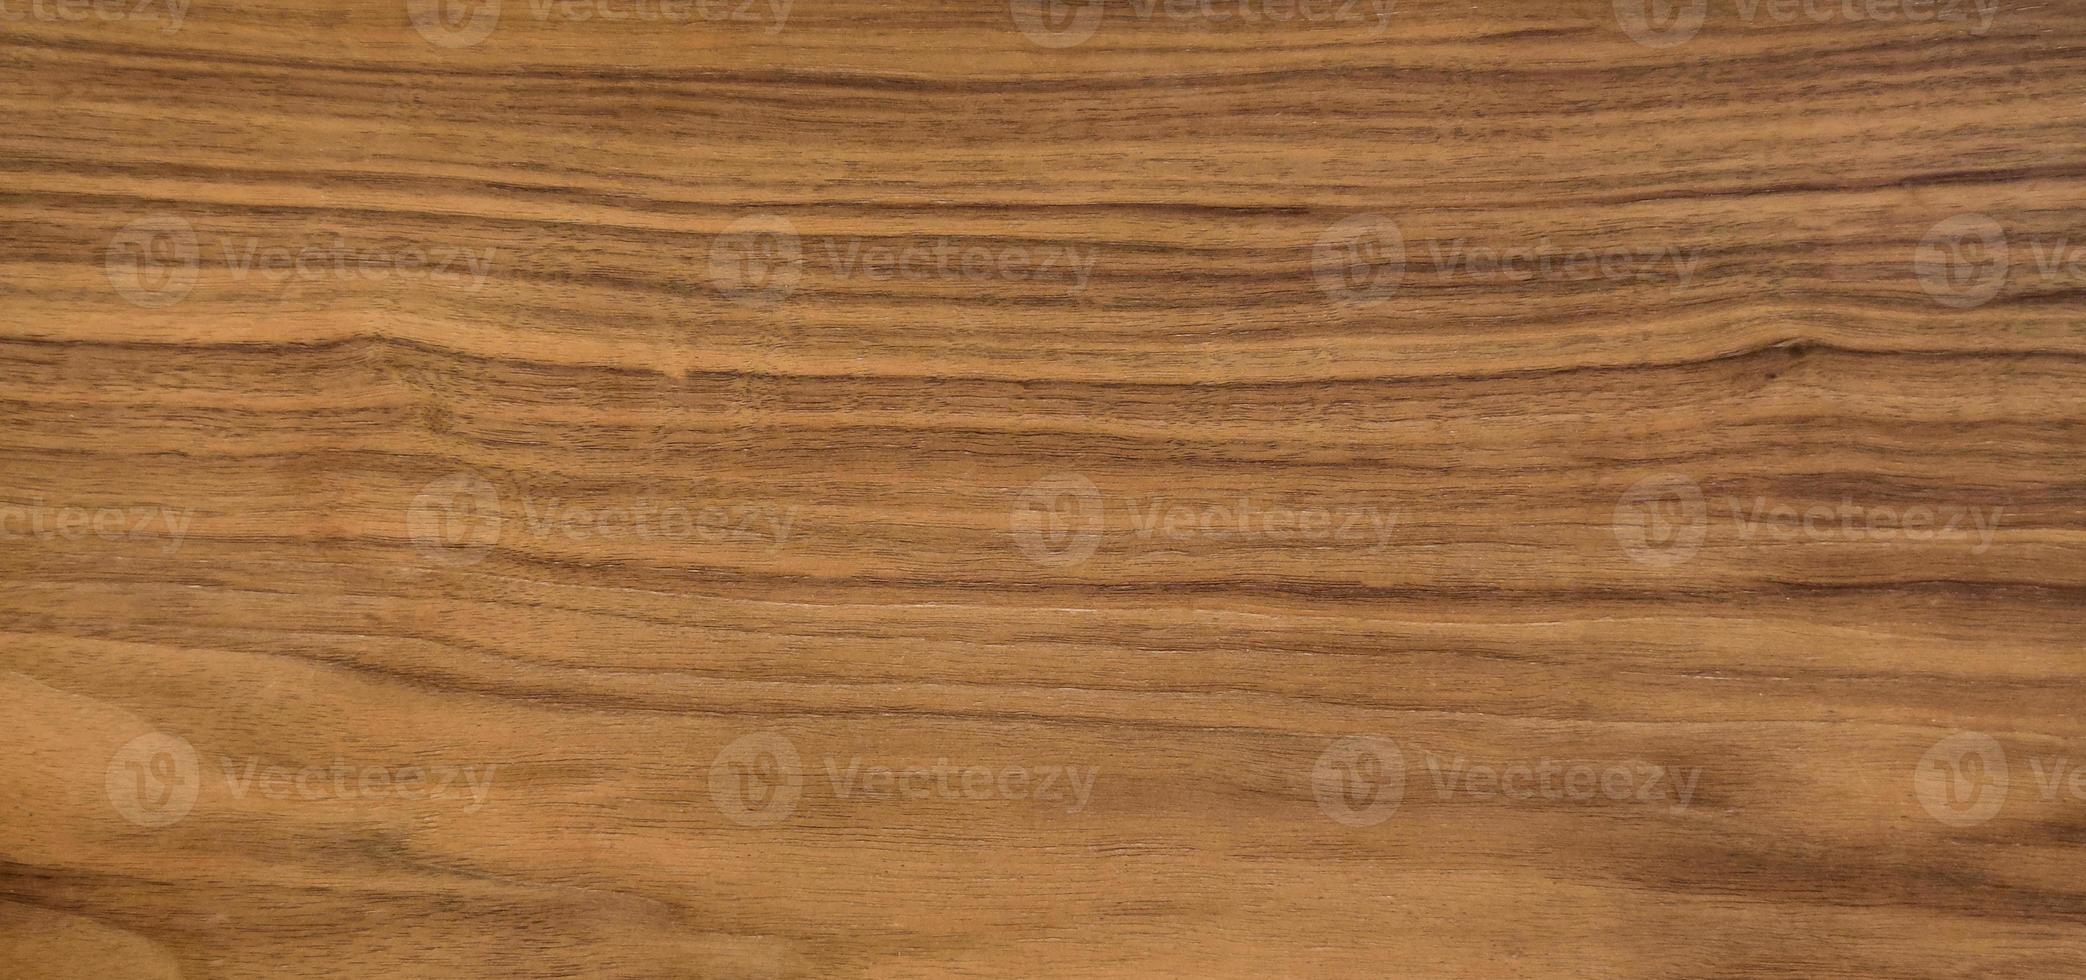 fundo de textura de madeira, textura padrão de madeira. foto